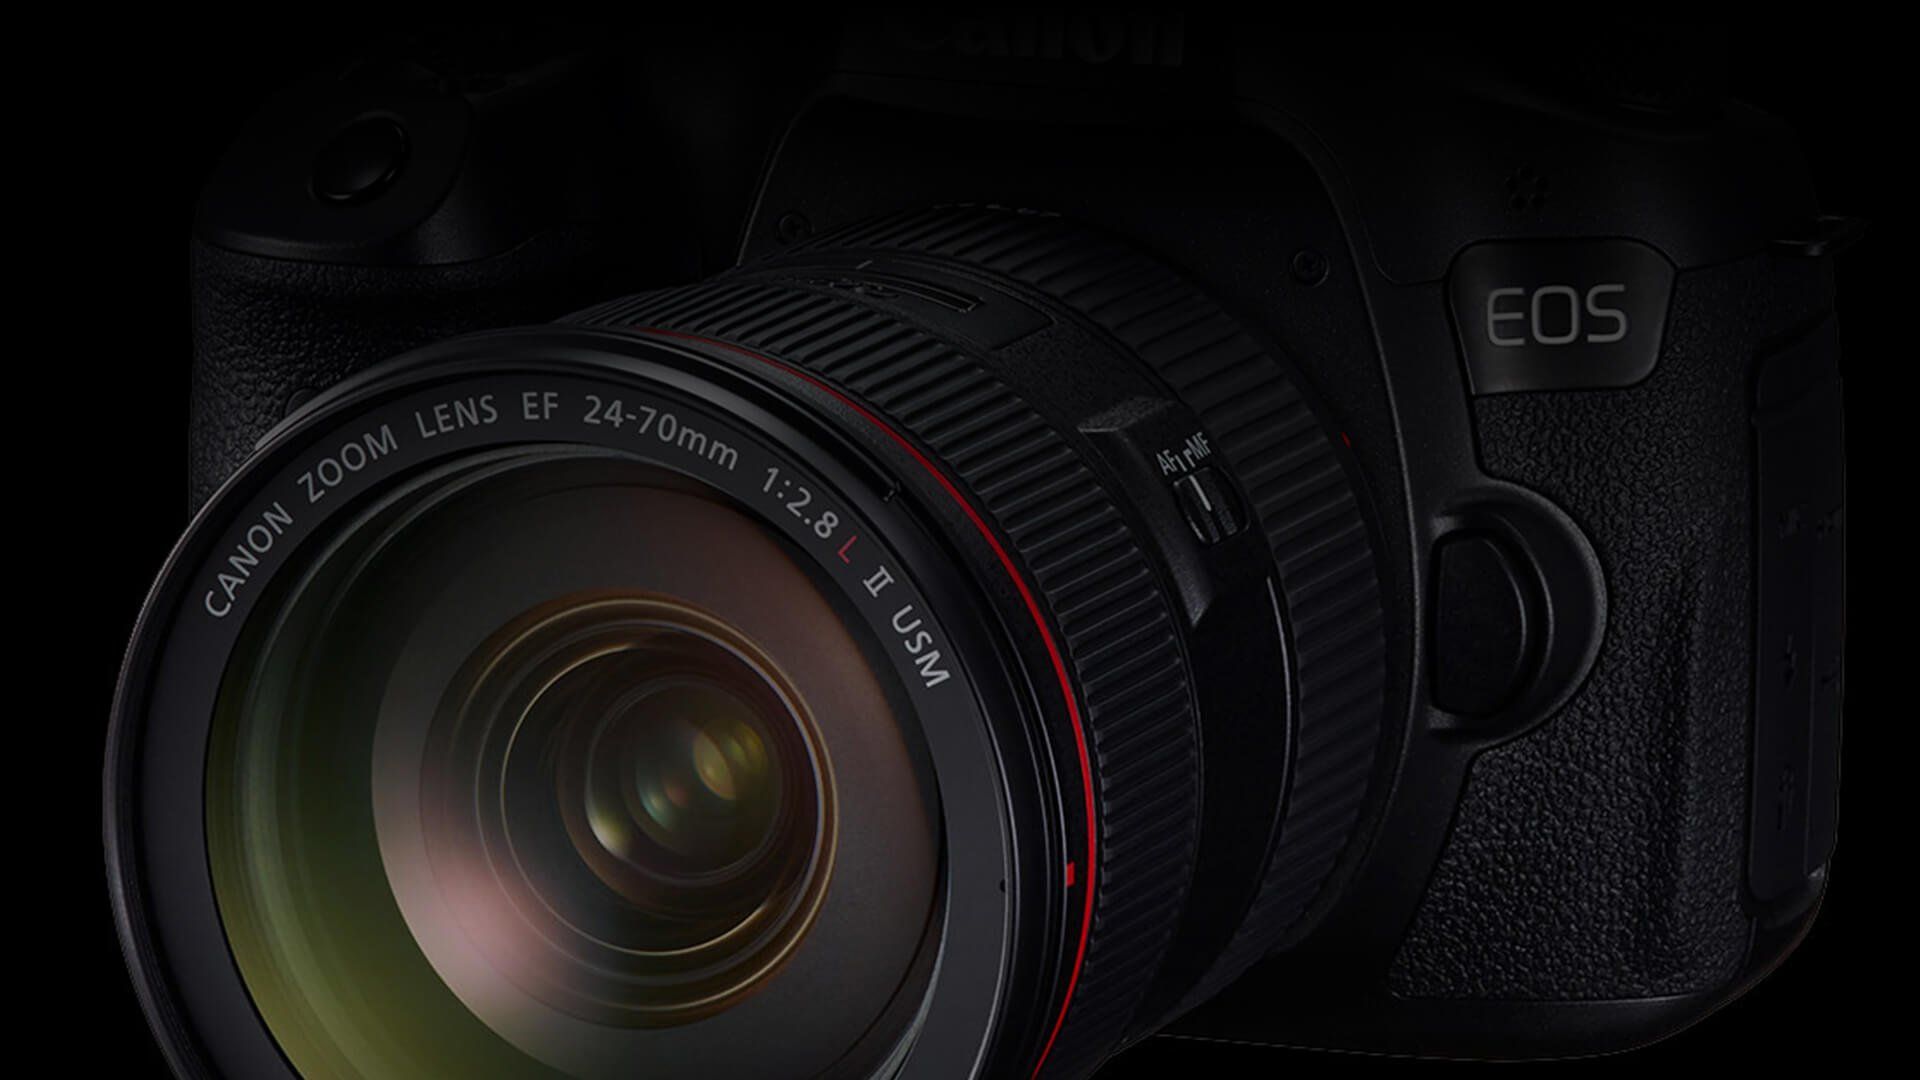 Canon DSLR Cameras: EOS Digital Cameras